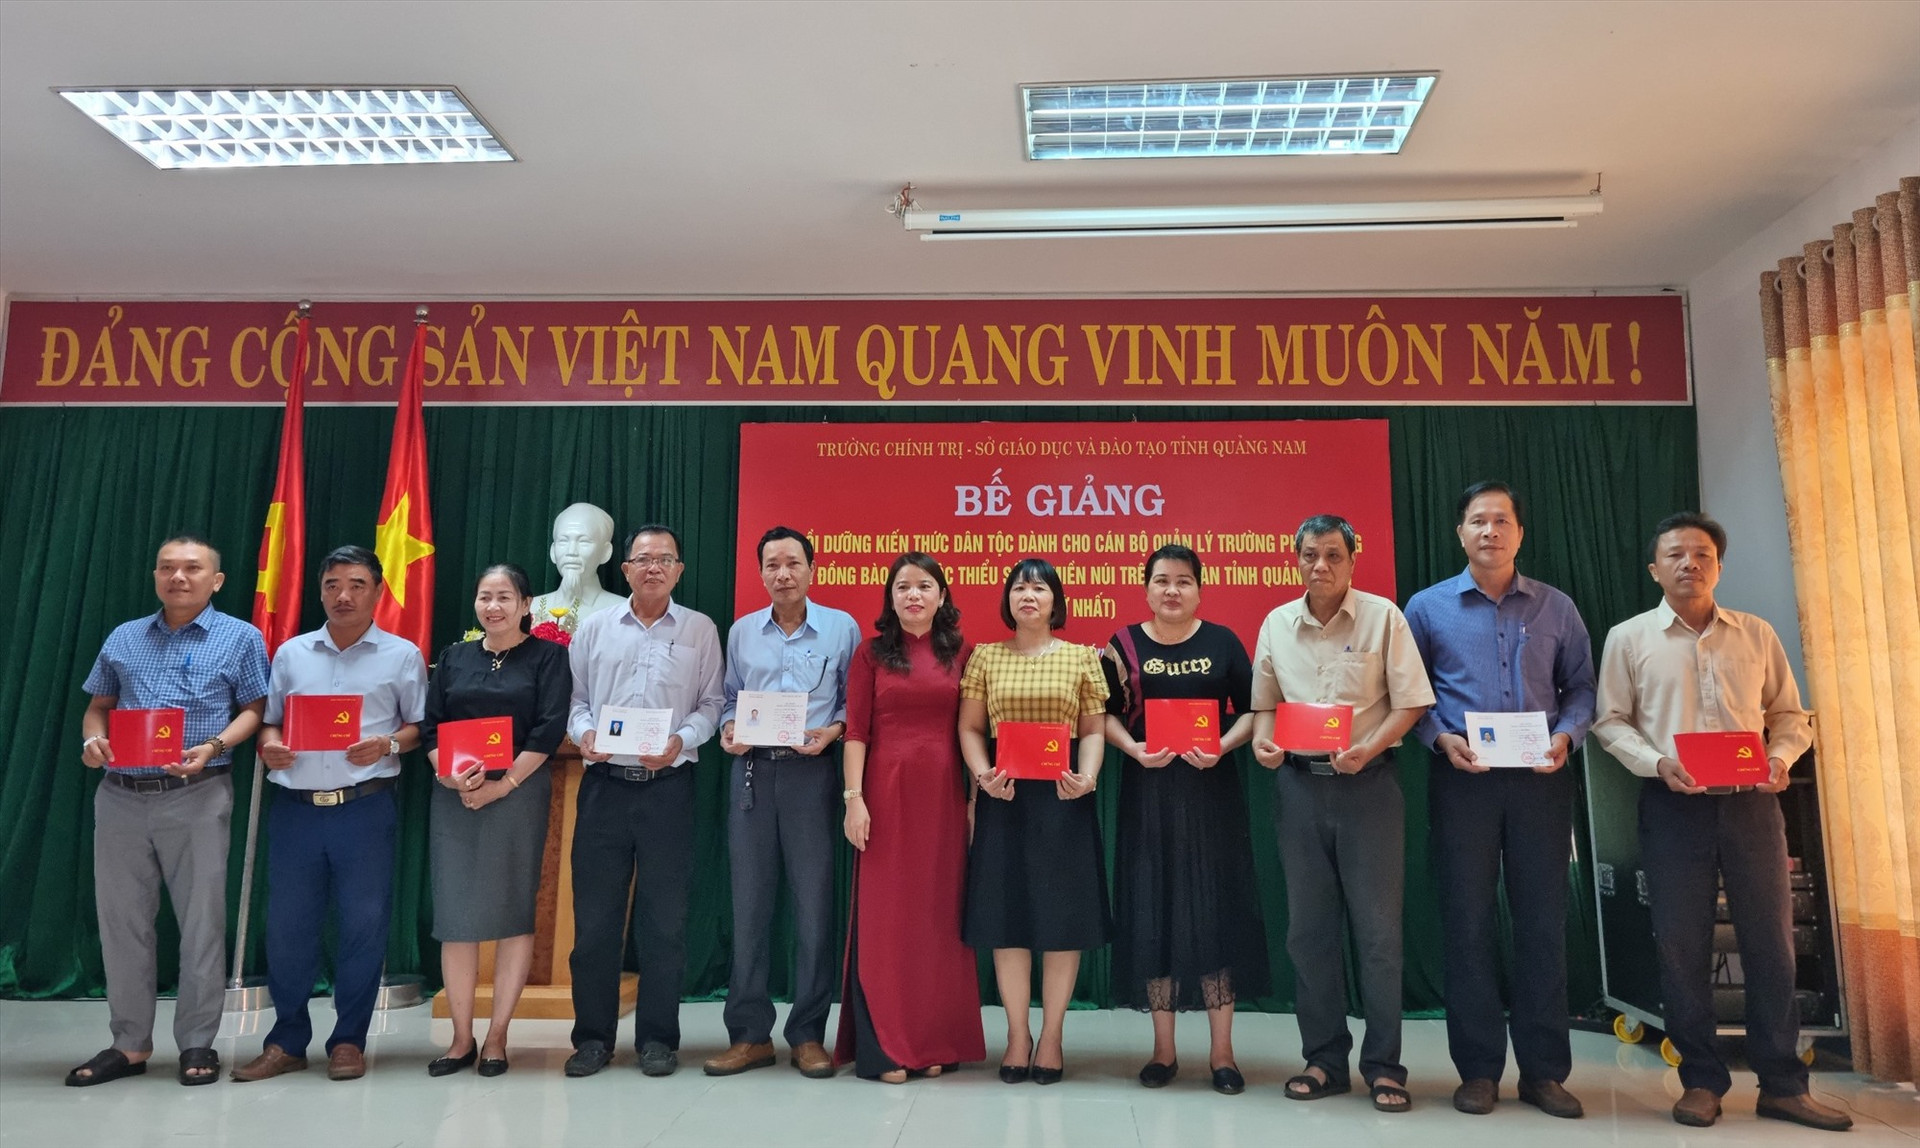 Bà Nguyễn Thị Khuê - Phó Hiệu trưởng Trường Chính trị tỉnh trao chứng chỉ cho học viên. Ảnh: L.Đ